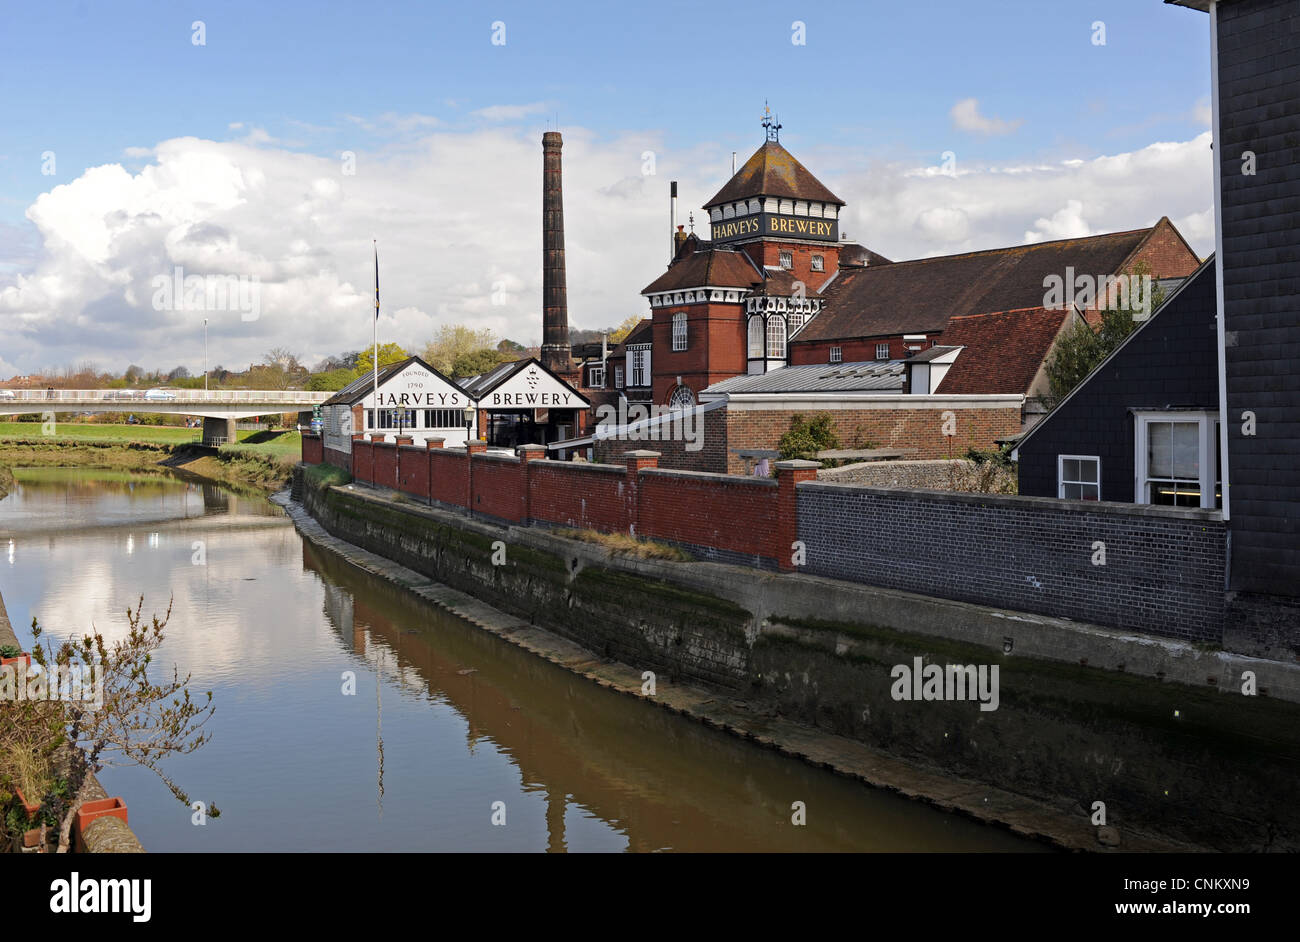 Lewes Town Center East Sussex Regno Unito - birreria Harveys sulle rive del fiume Ouse Foto Stock